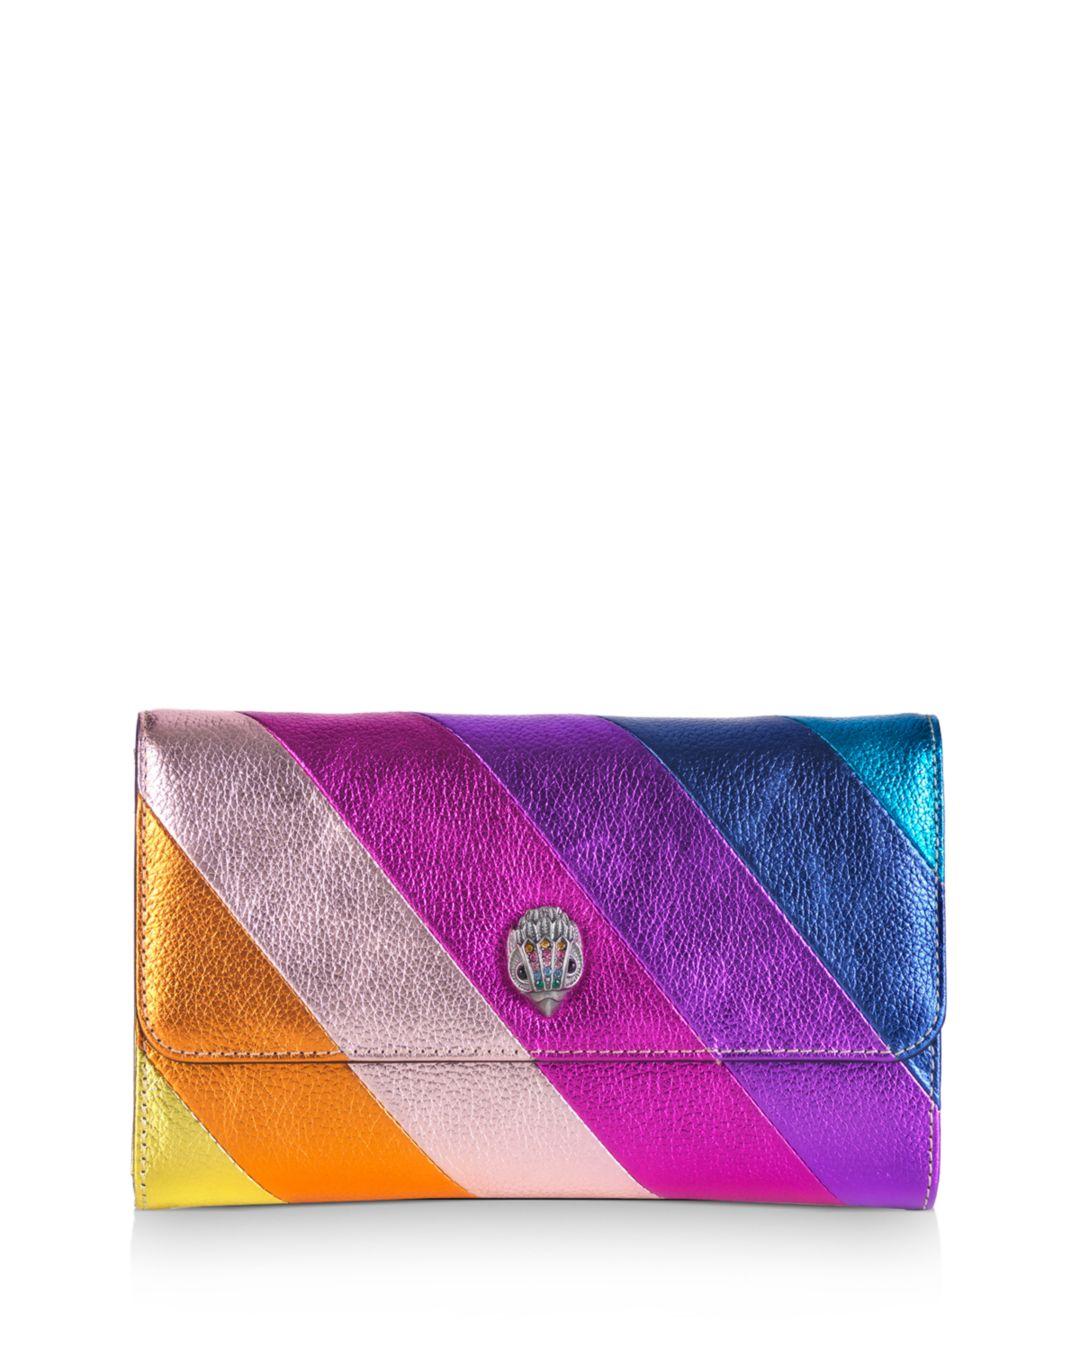 Kurt Geiger K Stripe Mini Leather Chain Wallet in Purple - Lyst